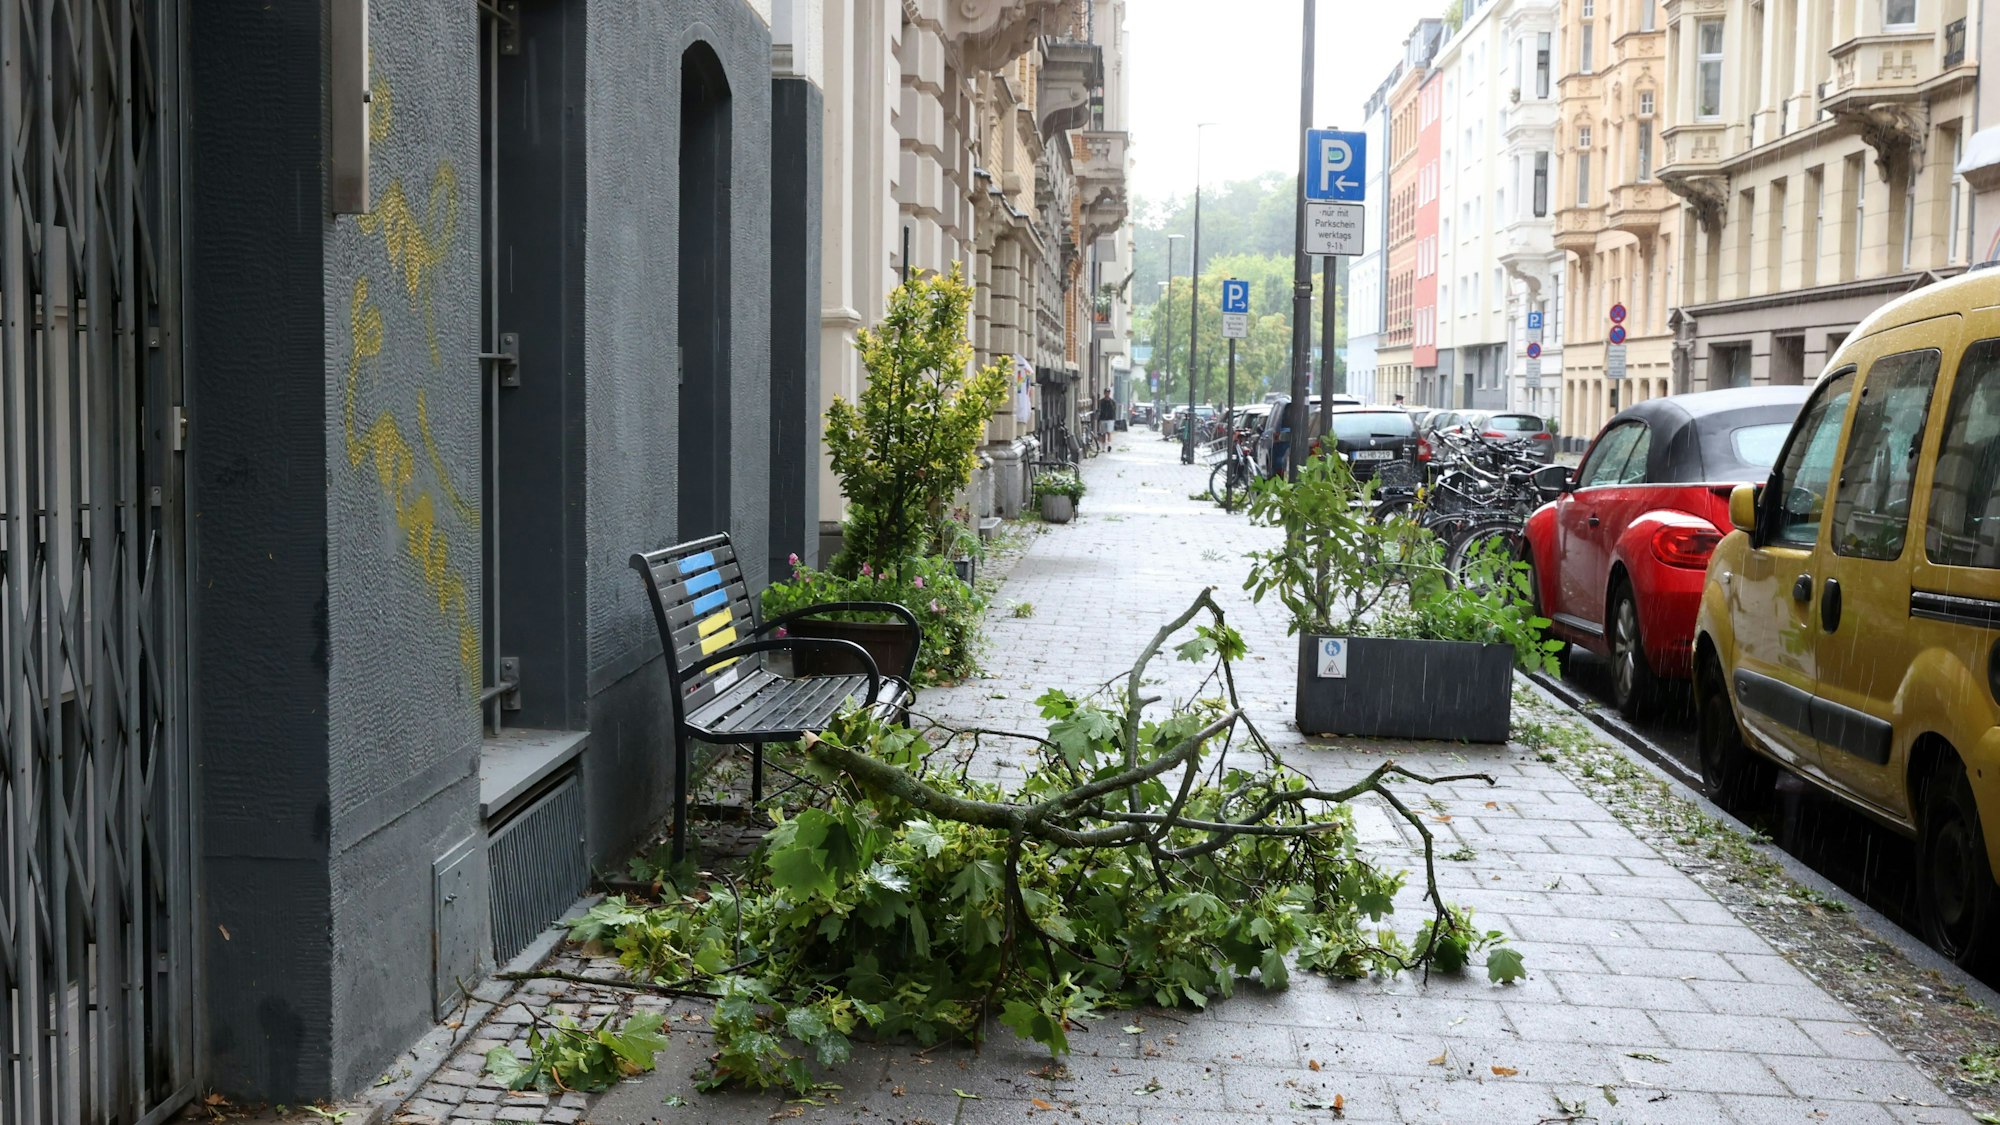 Unwetter in Köln am 24. Juli: Auch außerhalb des Stadtgartens kamen Äste durch die Windböen herunter.

